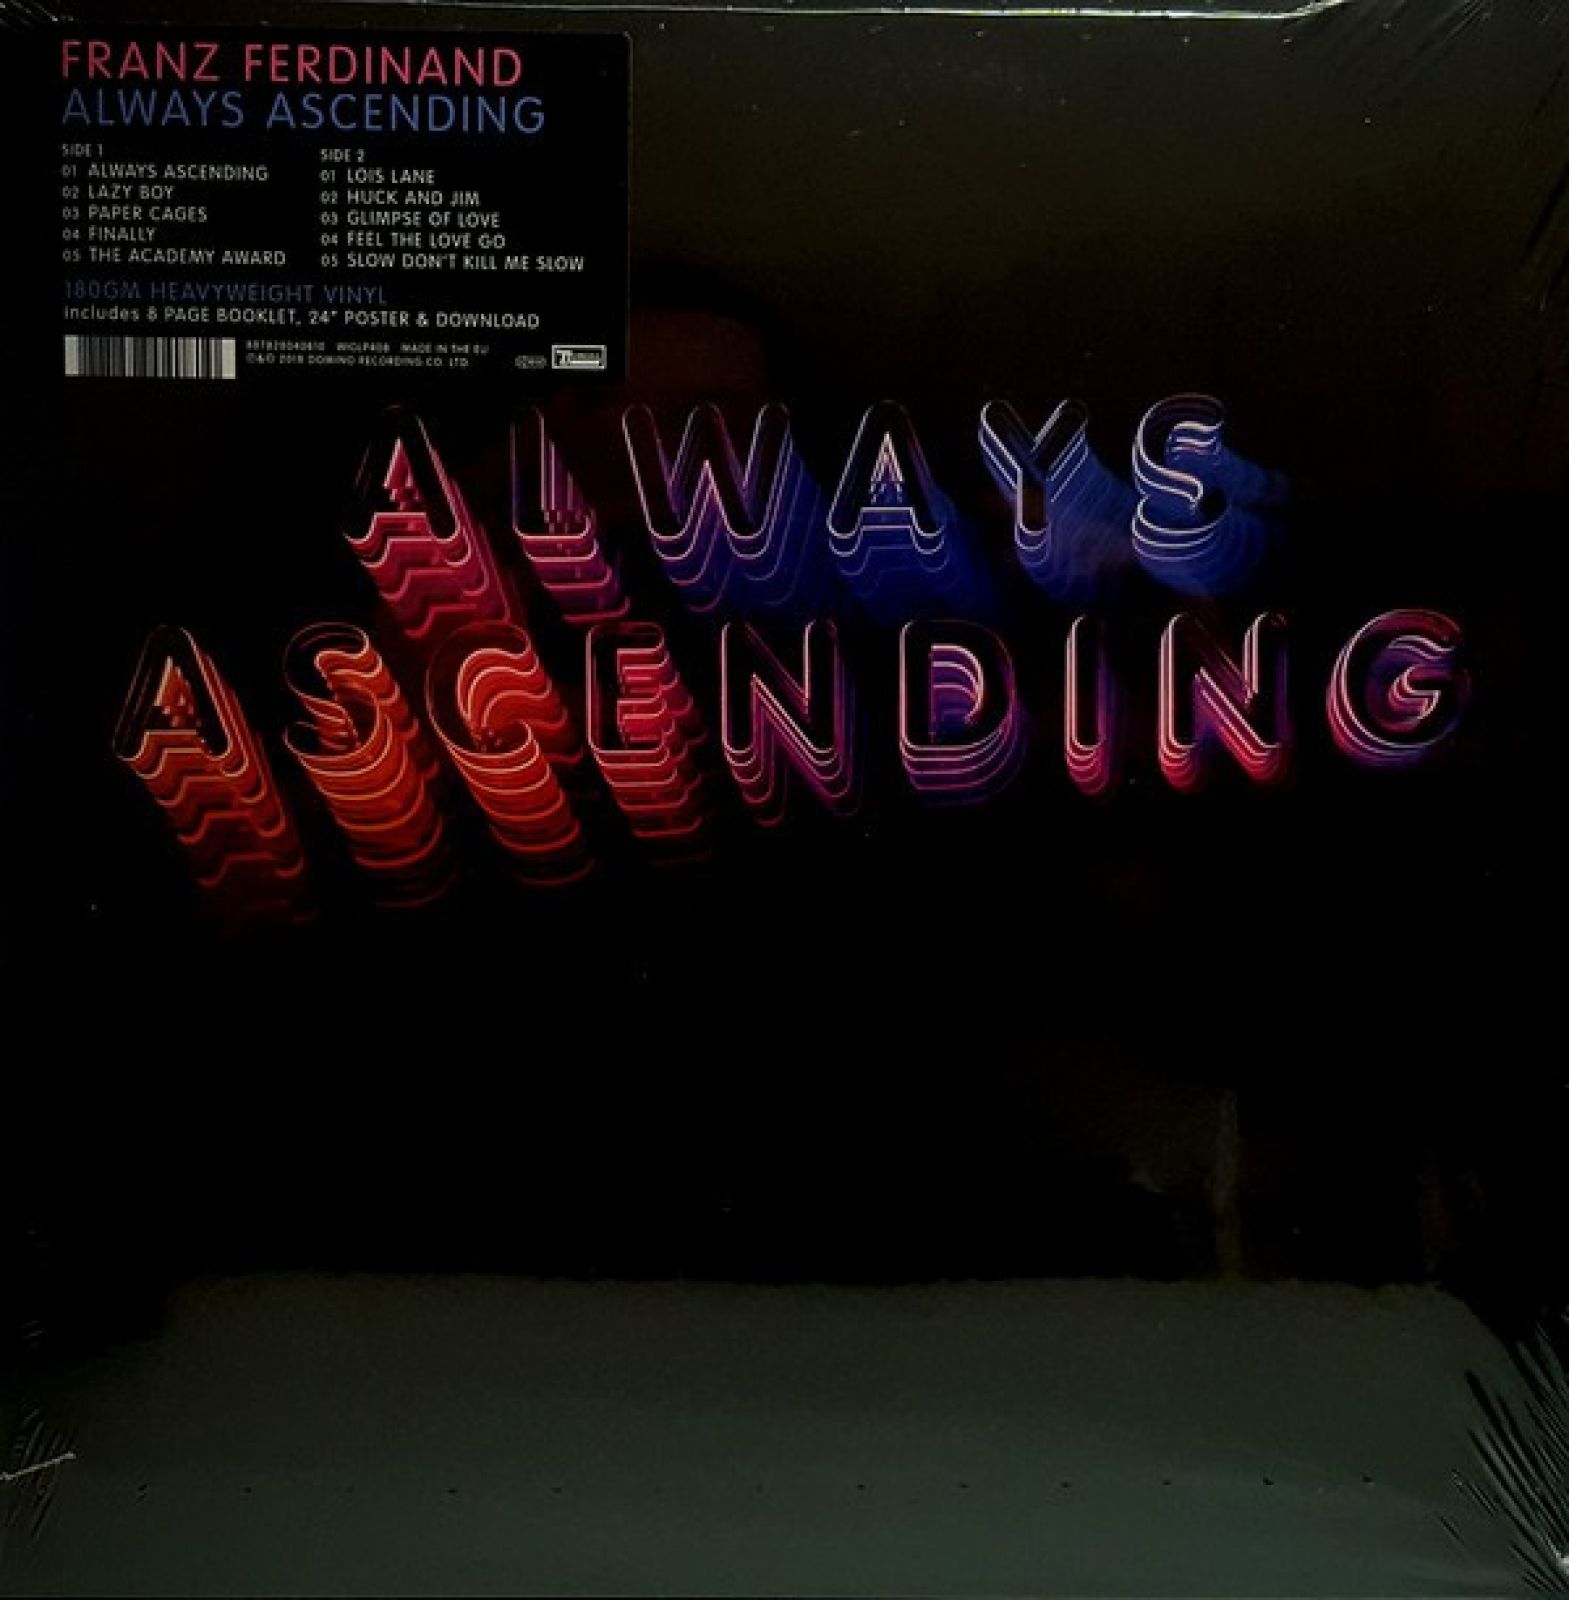 0887828040810, Виниловая пластинка Franz Ferdinand, Always Ascending 5034202023913 виниловая пластинка franz ferdinand blood